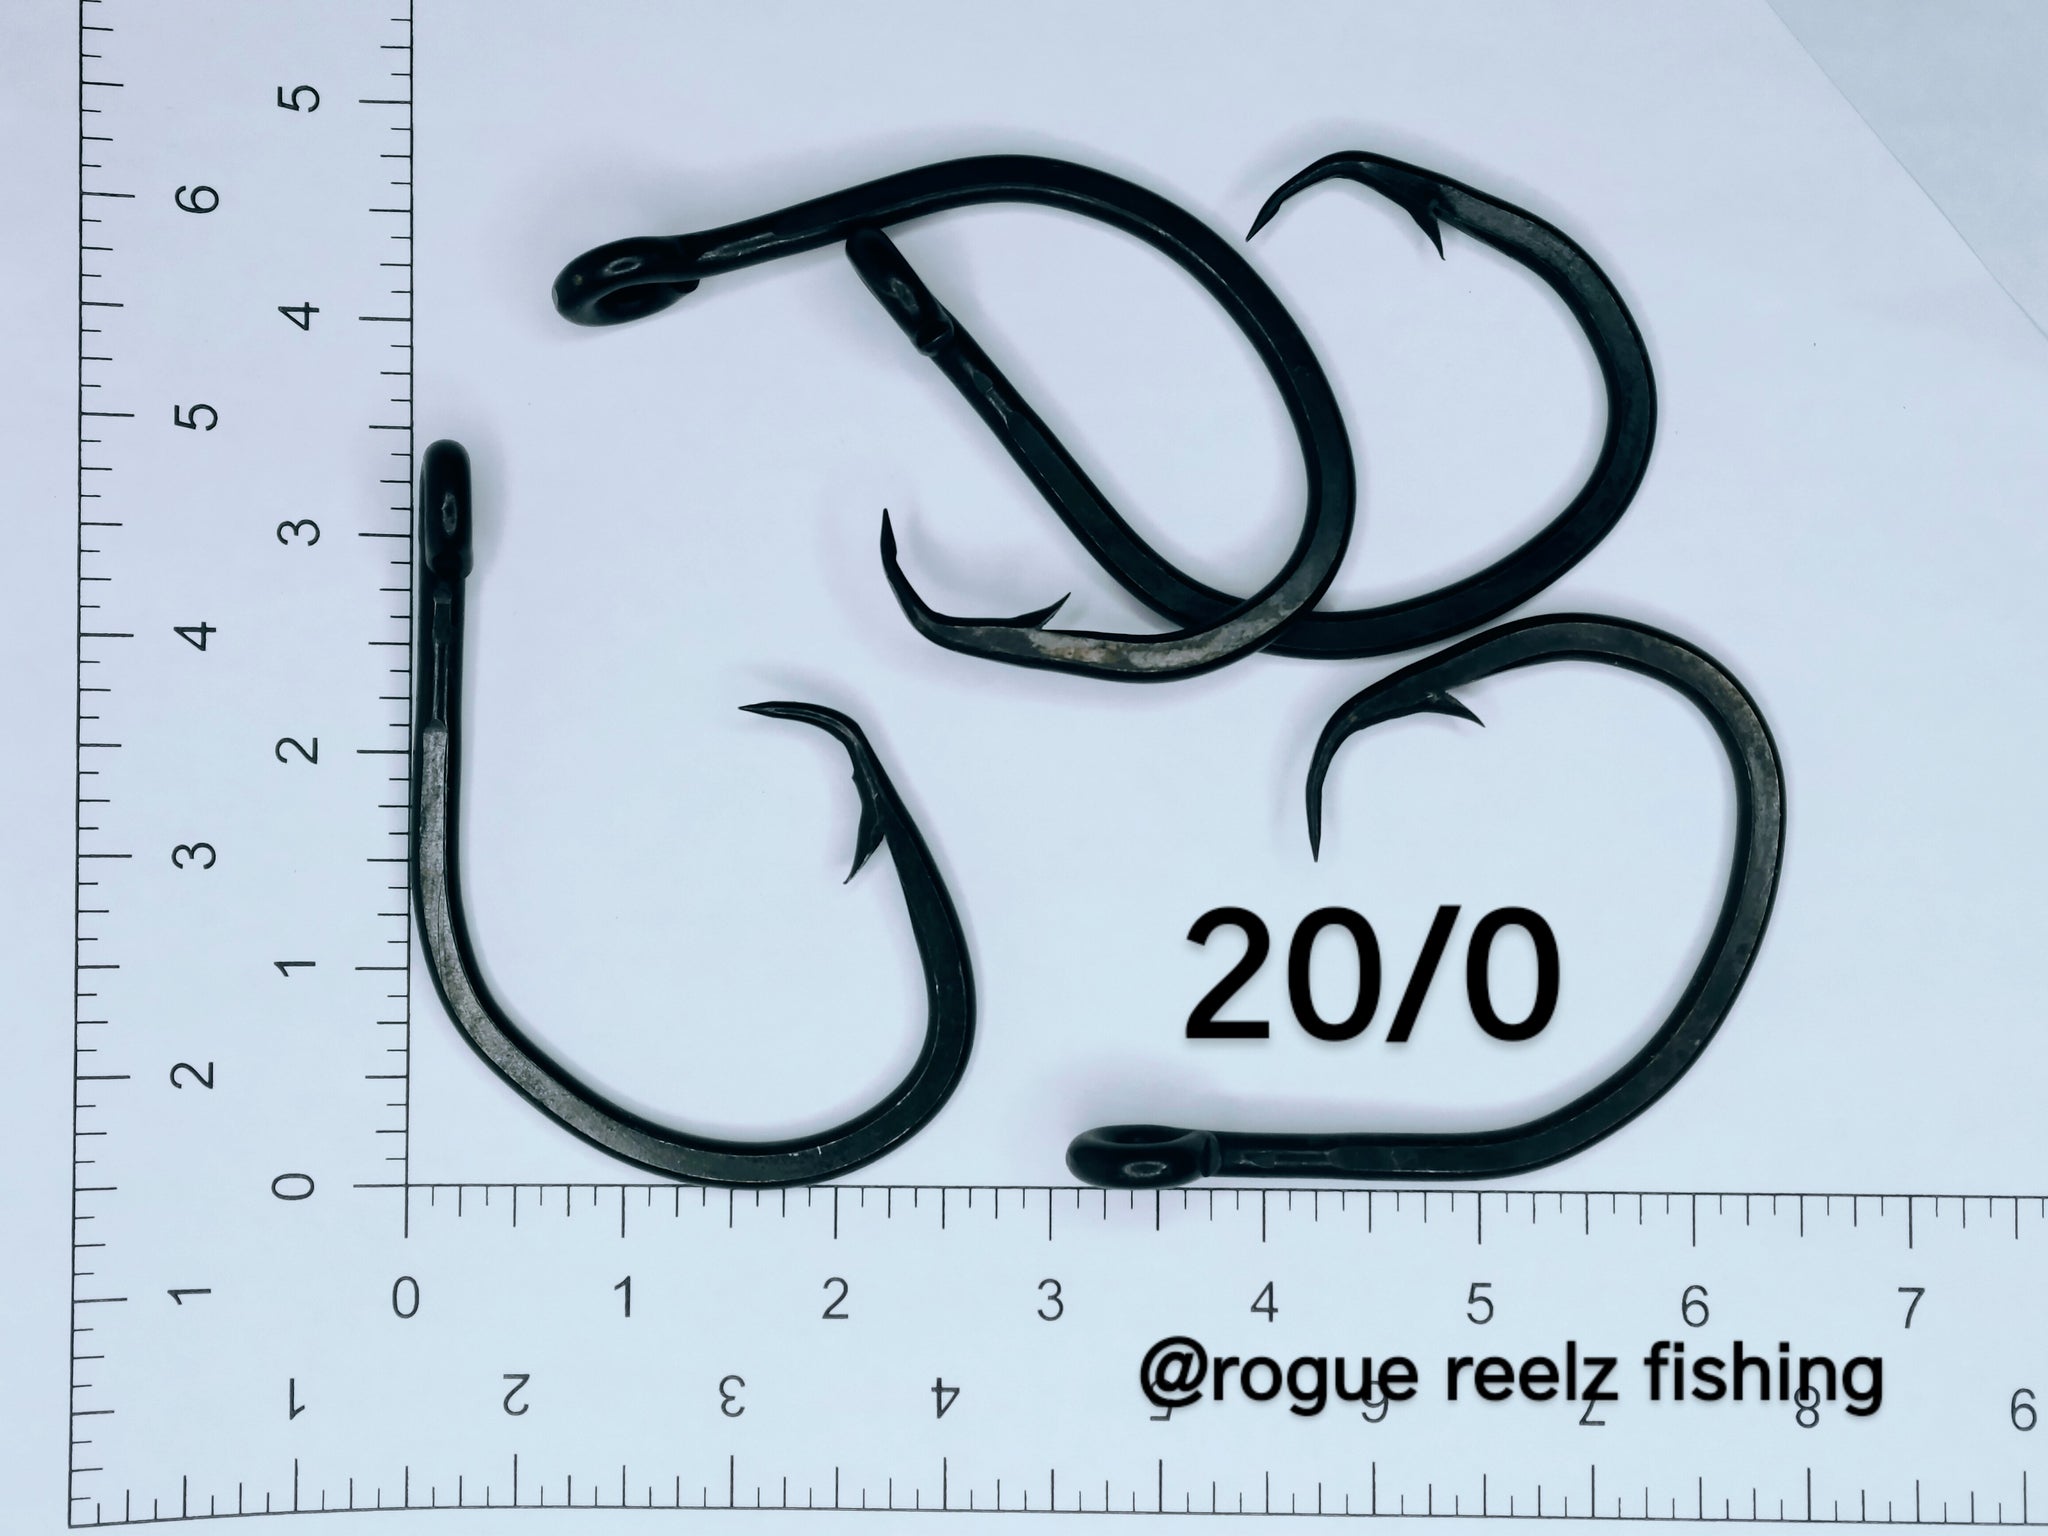 treble hook size 20